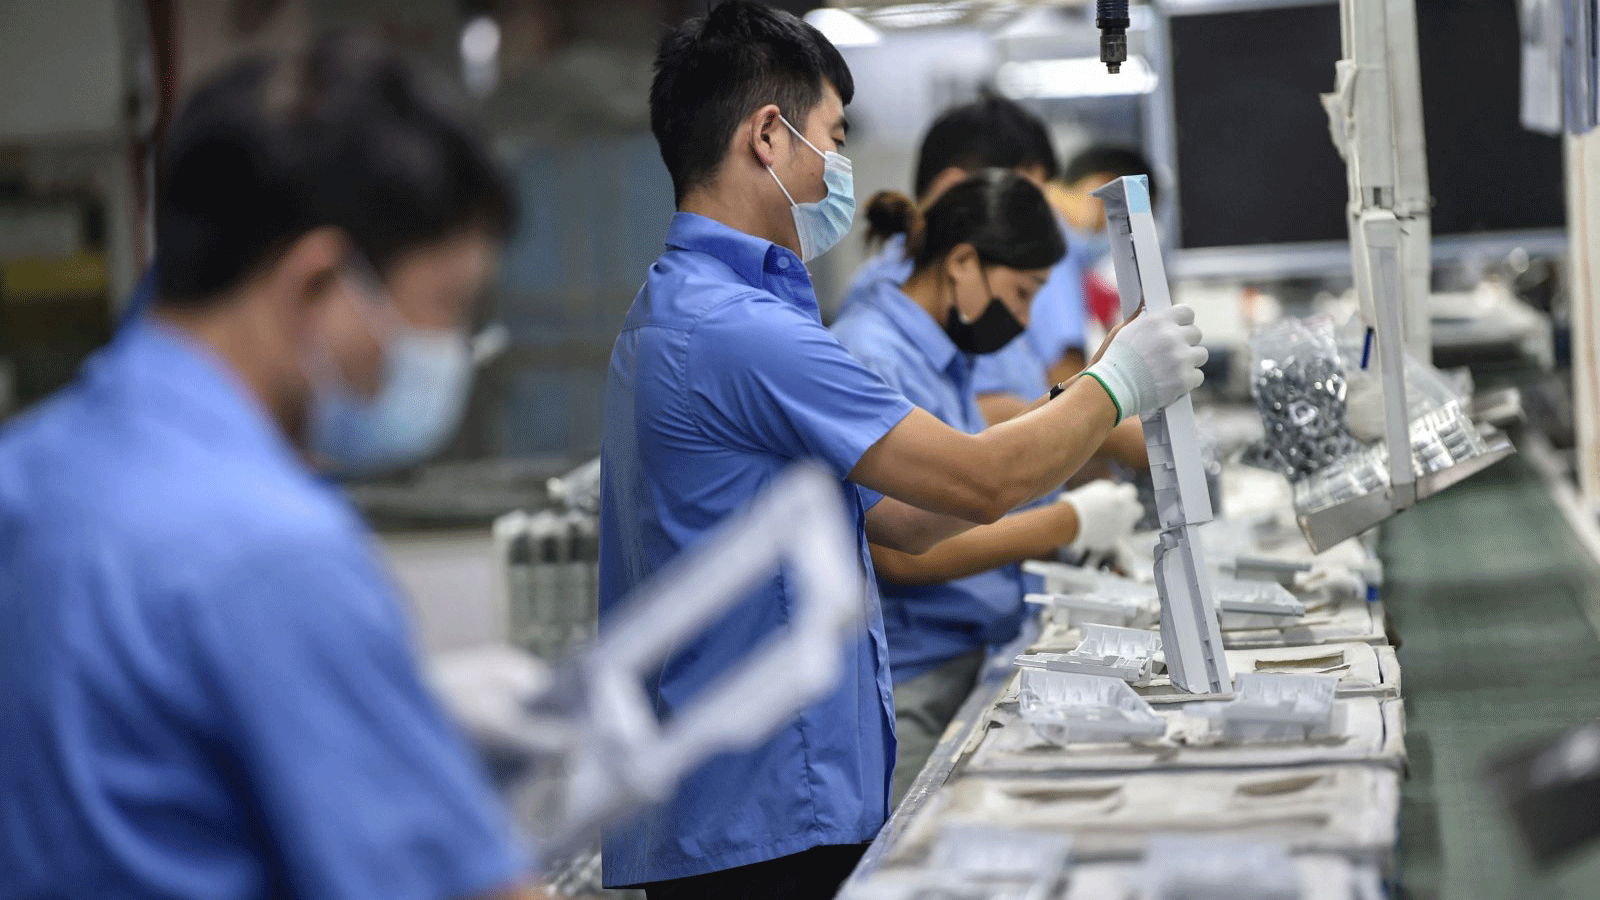 عمال ينتجون قطع غيار الغسالات في مصنع في نانجينغ، مقاطعة جيانغسو الشرقية، الصين، في 16 آب/ أغسطس 2021